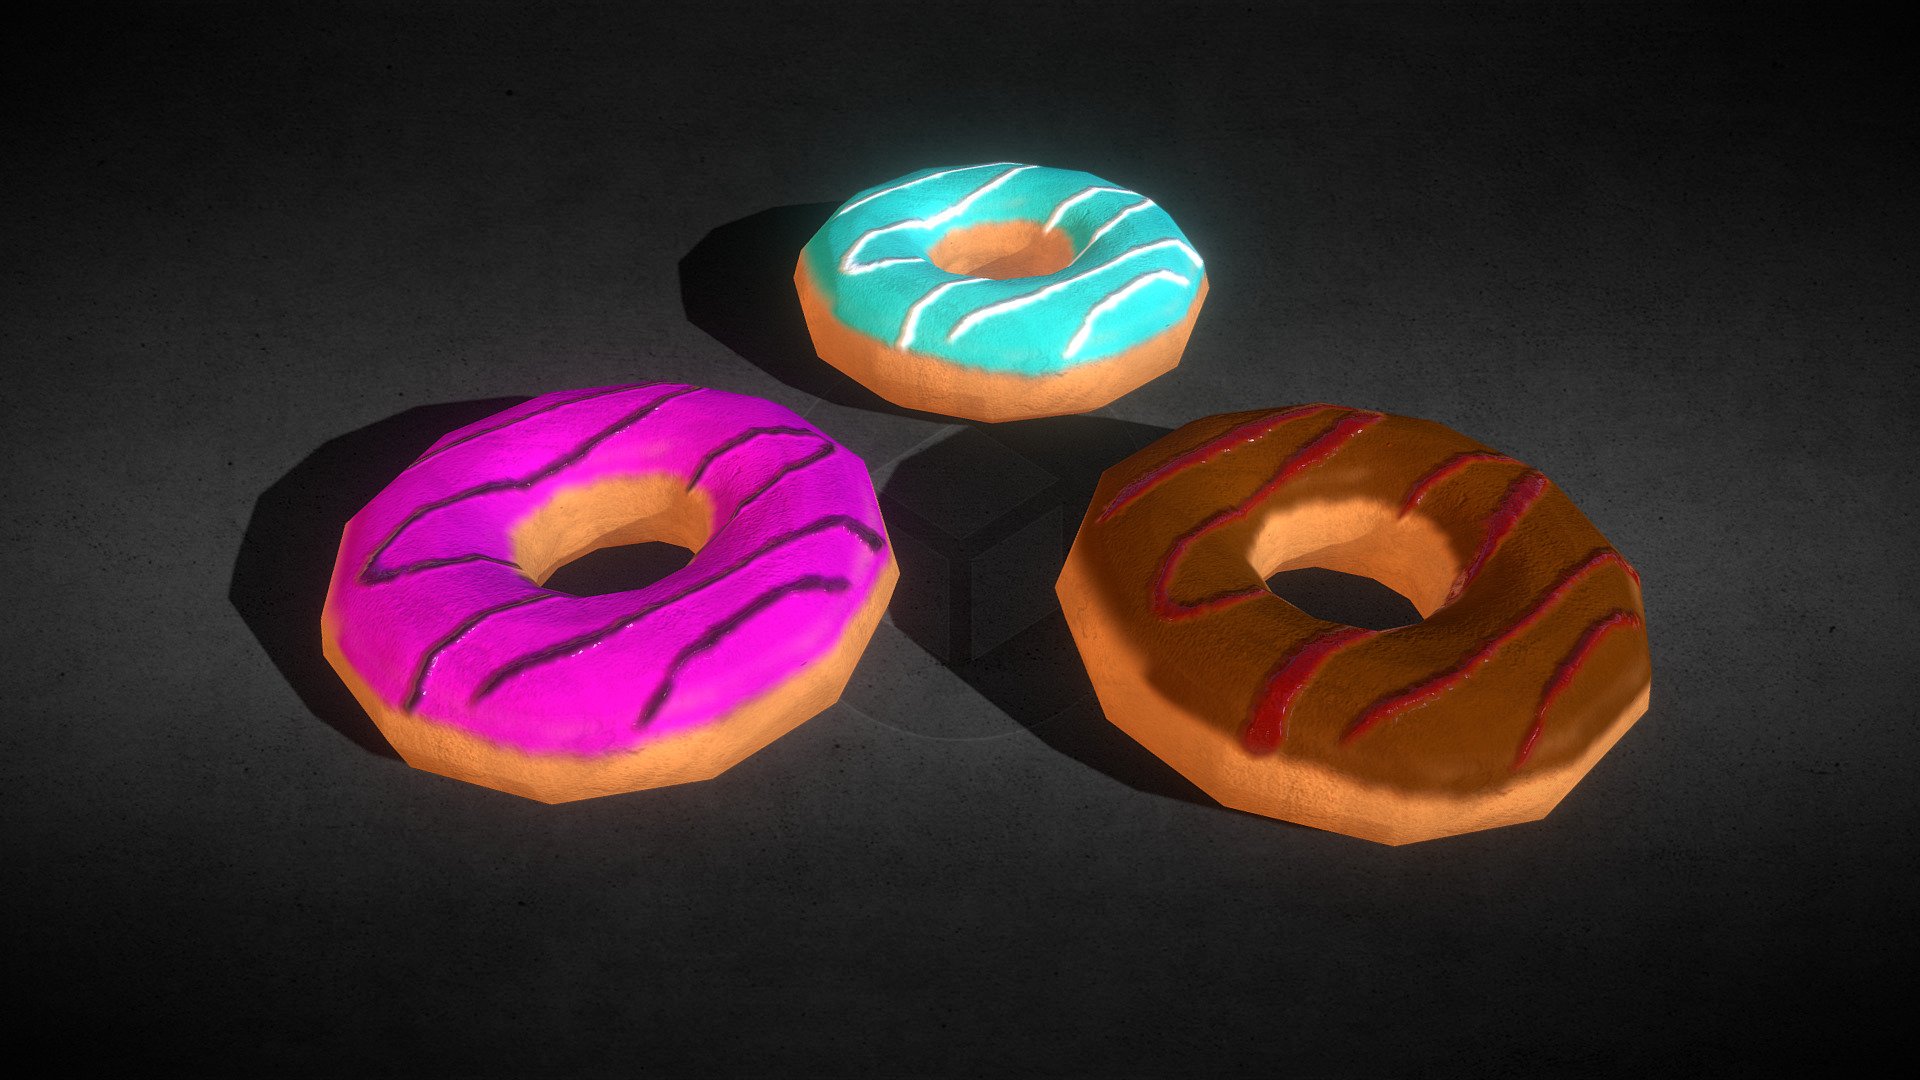 Stylized Donuts - 3D model by TorresGeek 3d model